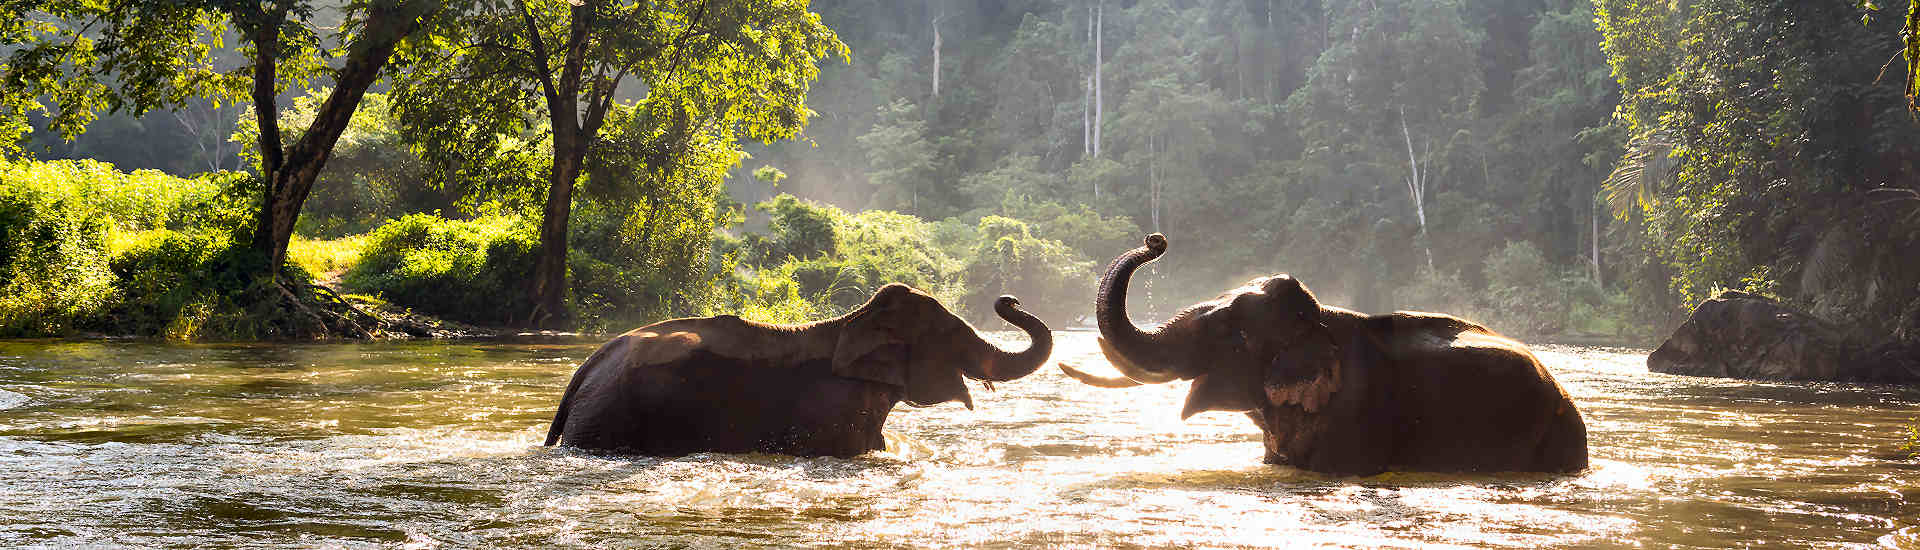 Eine Gruppe Elefanten, darunter Kühe und Jungtiere, baden an einem heißen Tag in einem Fluss in Asien. Die Elefanten planschen im Wasser, spritzen sich gegenseitig und nutzen ihre Rüssel zum Duschen.